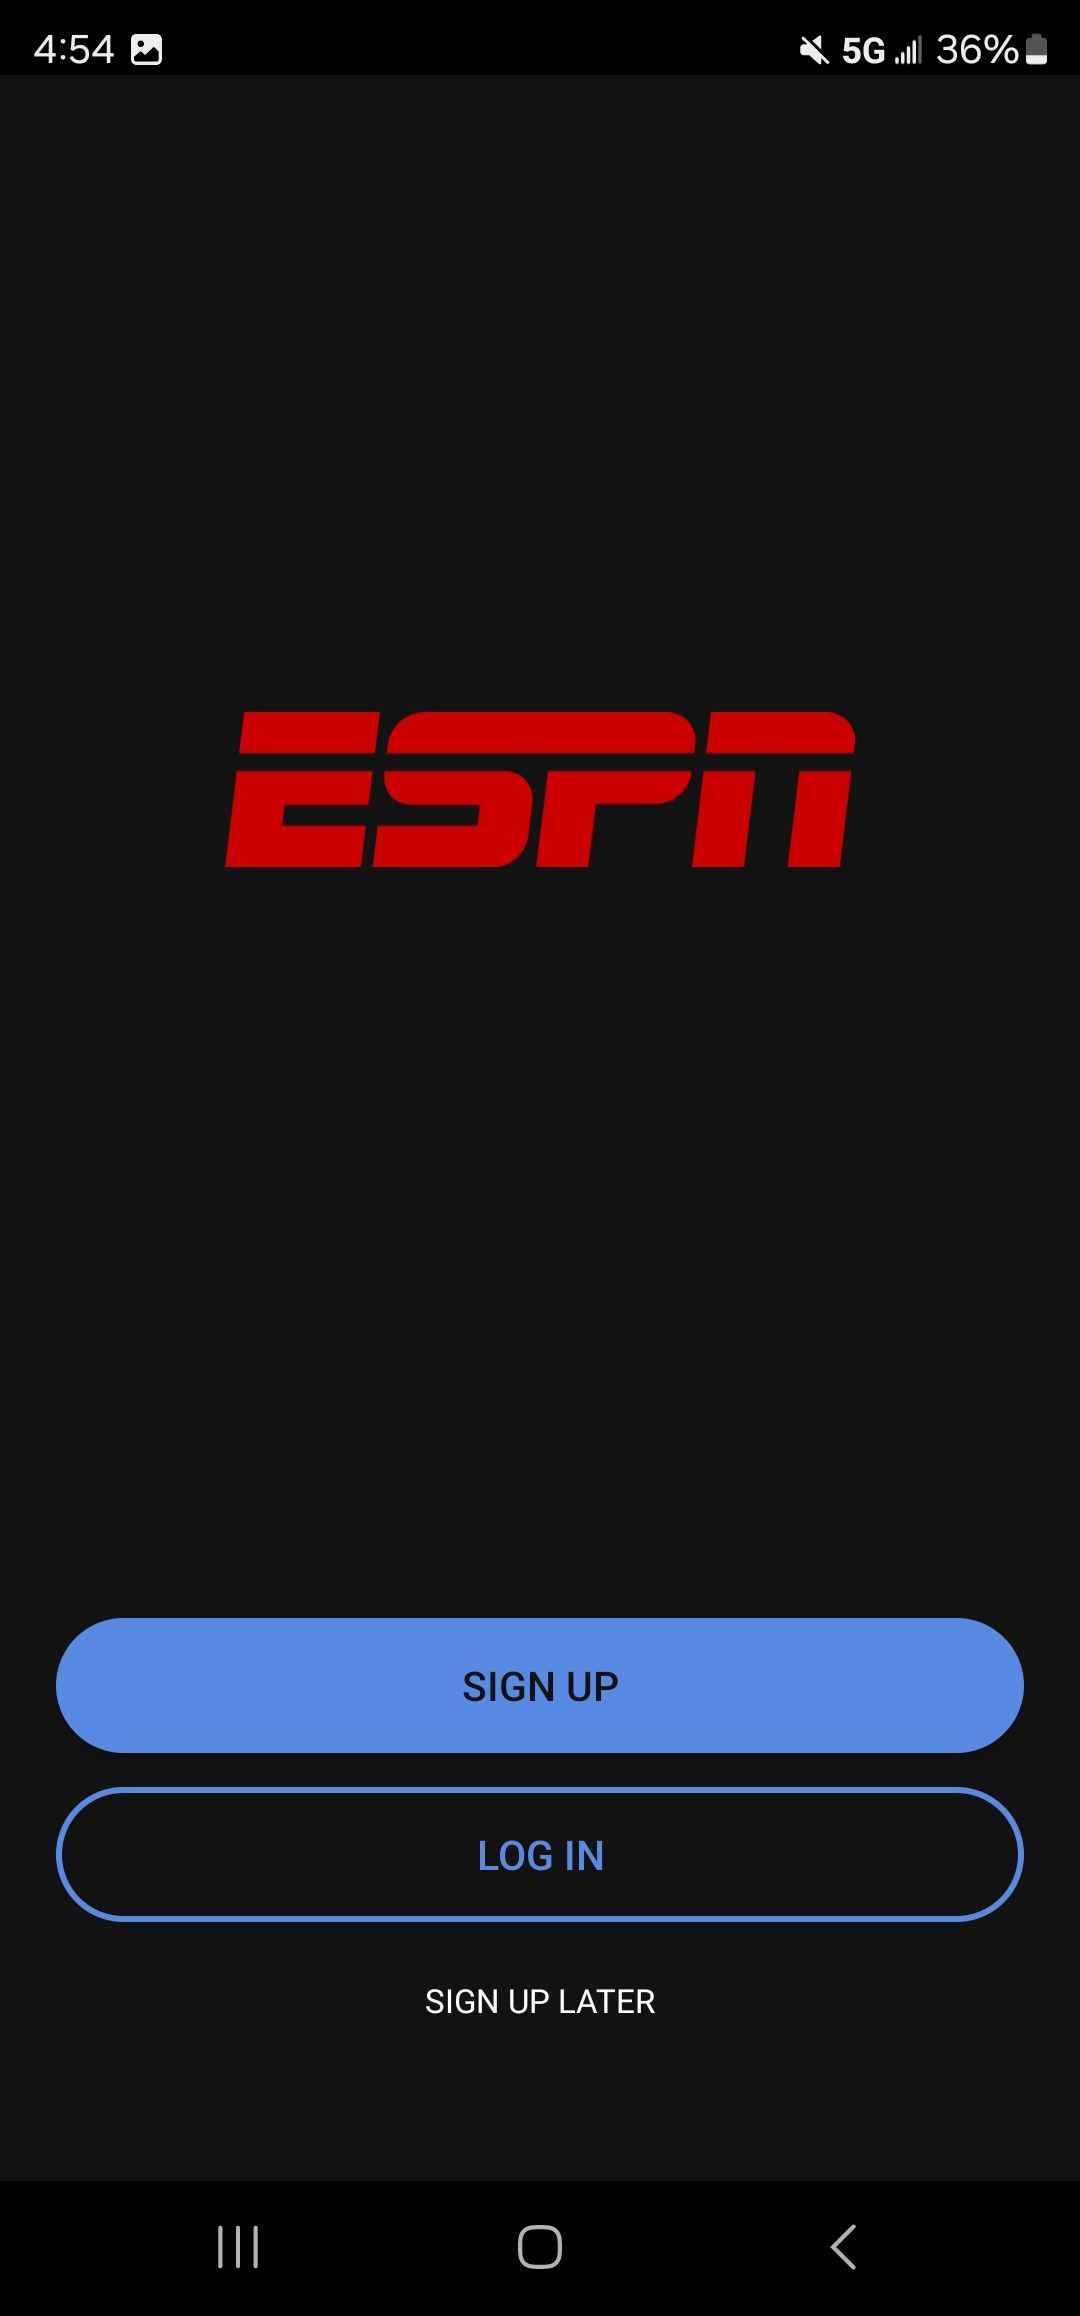 Logotipo da ESPN na página do aplicativo ESPN com opções de inscrição e login 